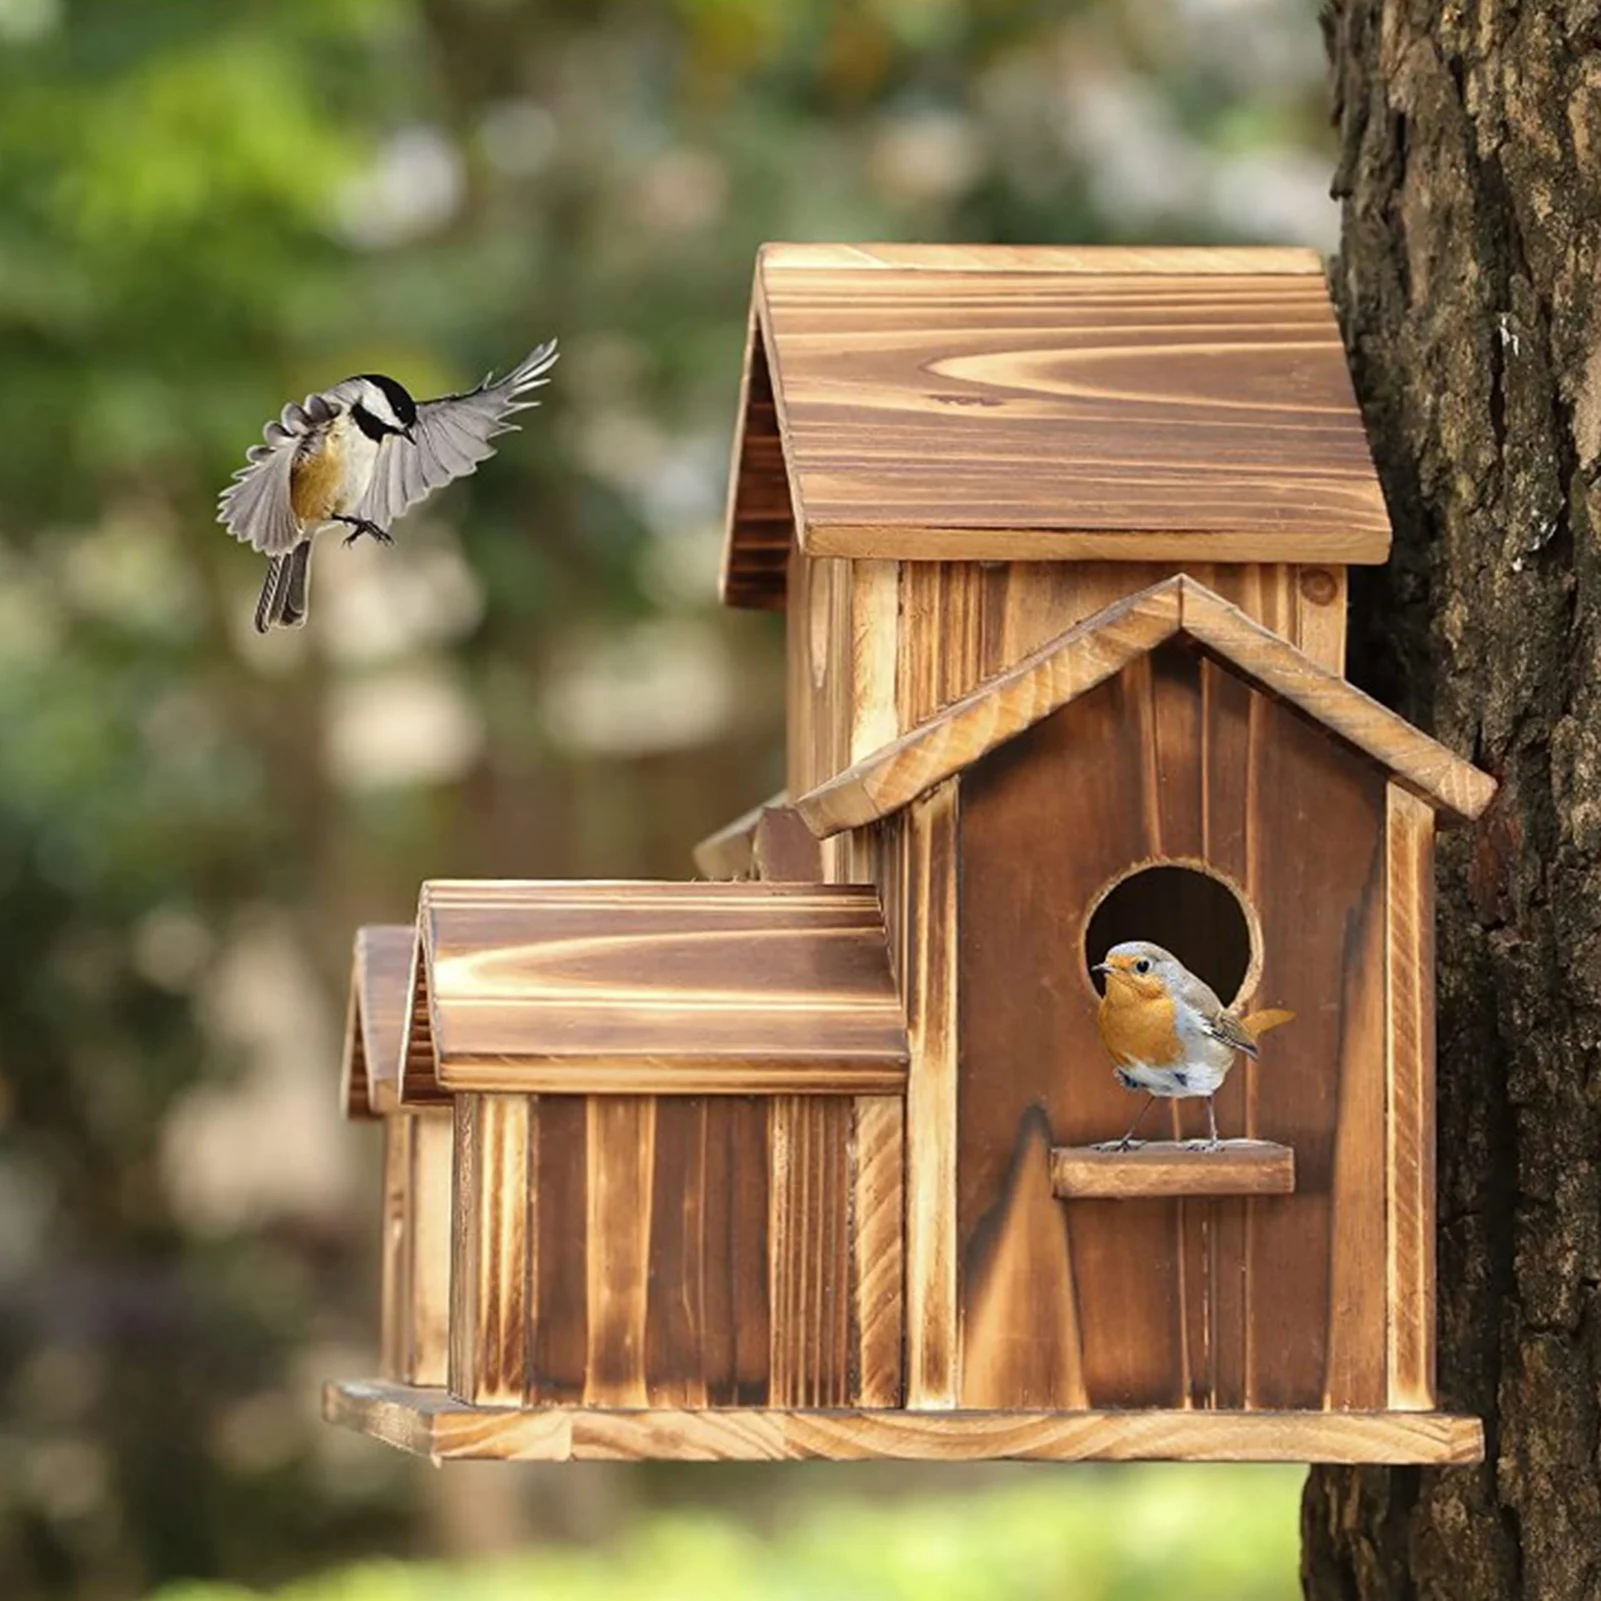 OUKENS Maison d'oiseau, Maison d'oiseau Suspendue Jardin extérieur Balcon  décoration en Bois perroquets Oiseaux Maison nids Cage de Repos boîte